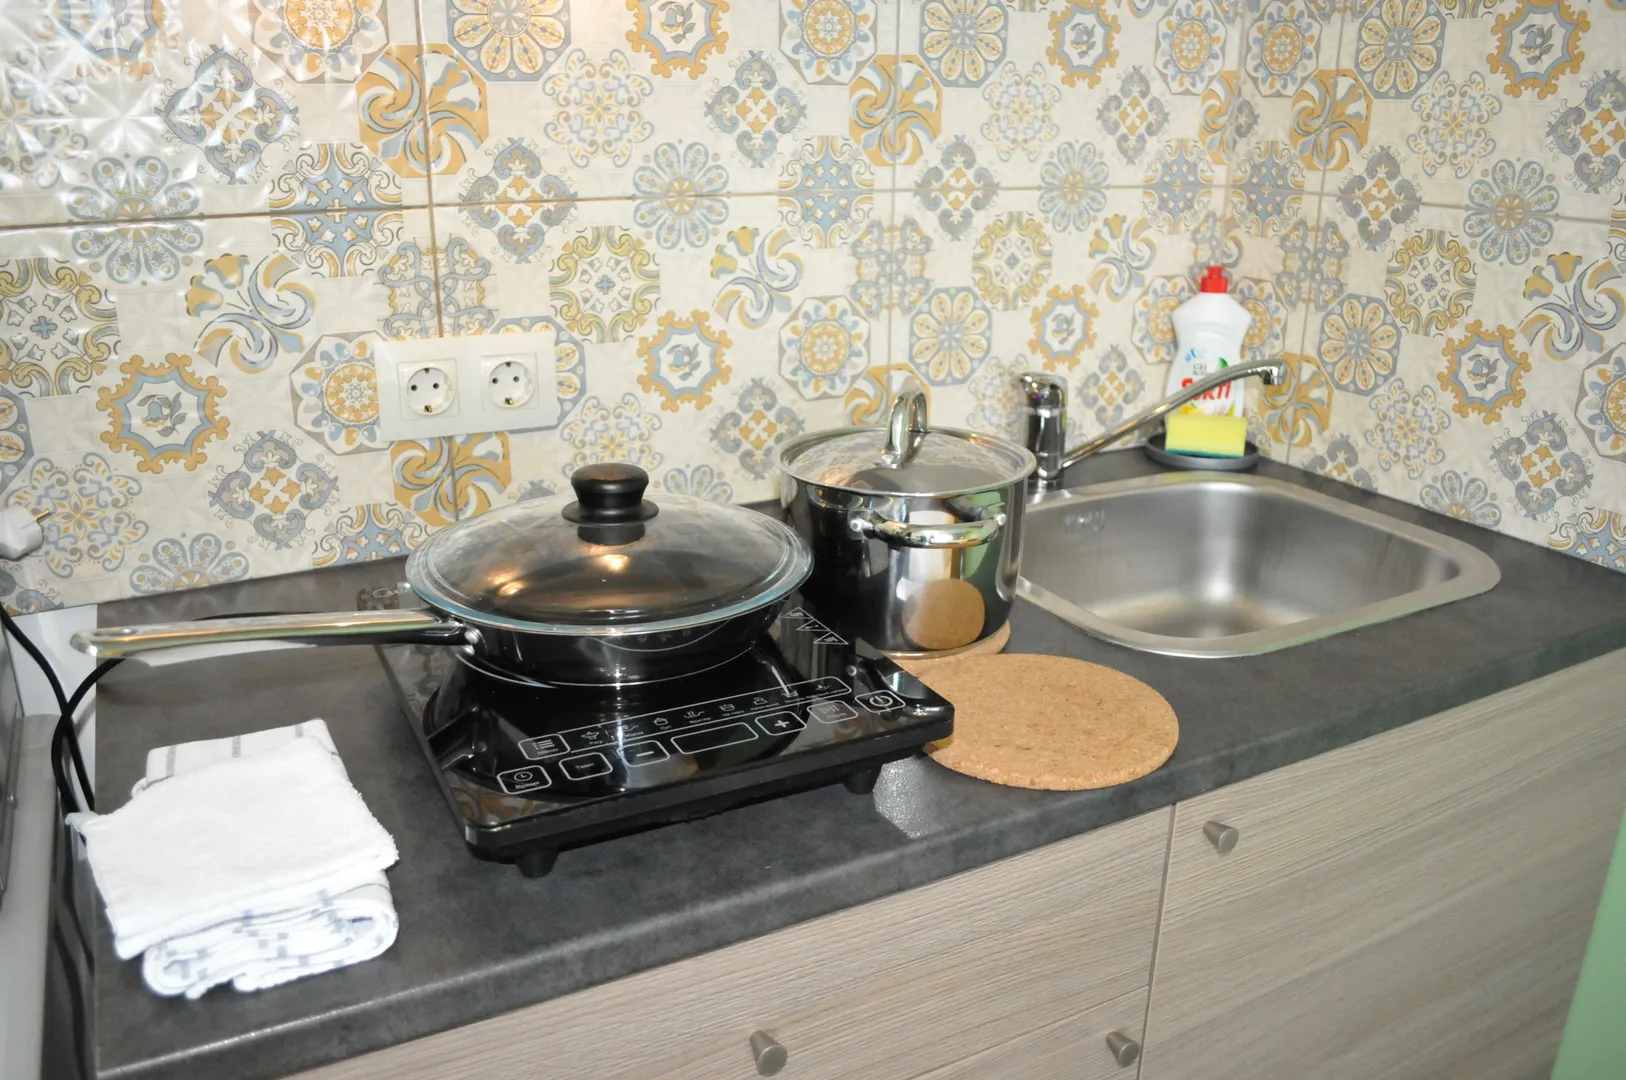 Электроплита, посуда и принадлежности для "готовки"